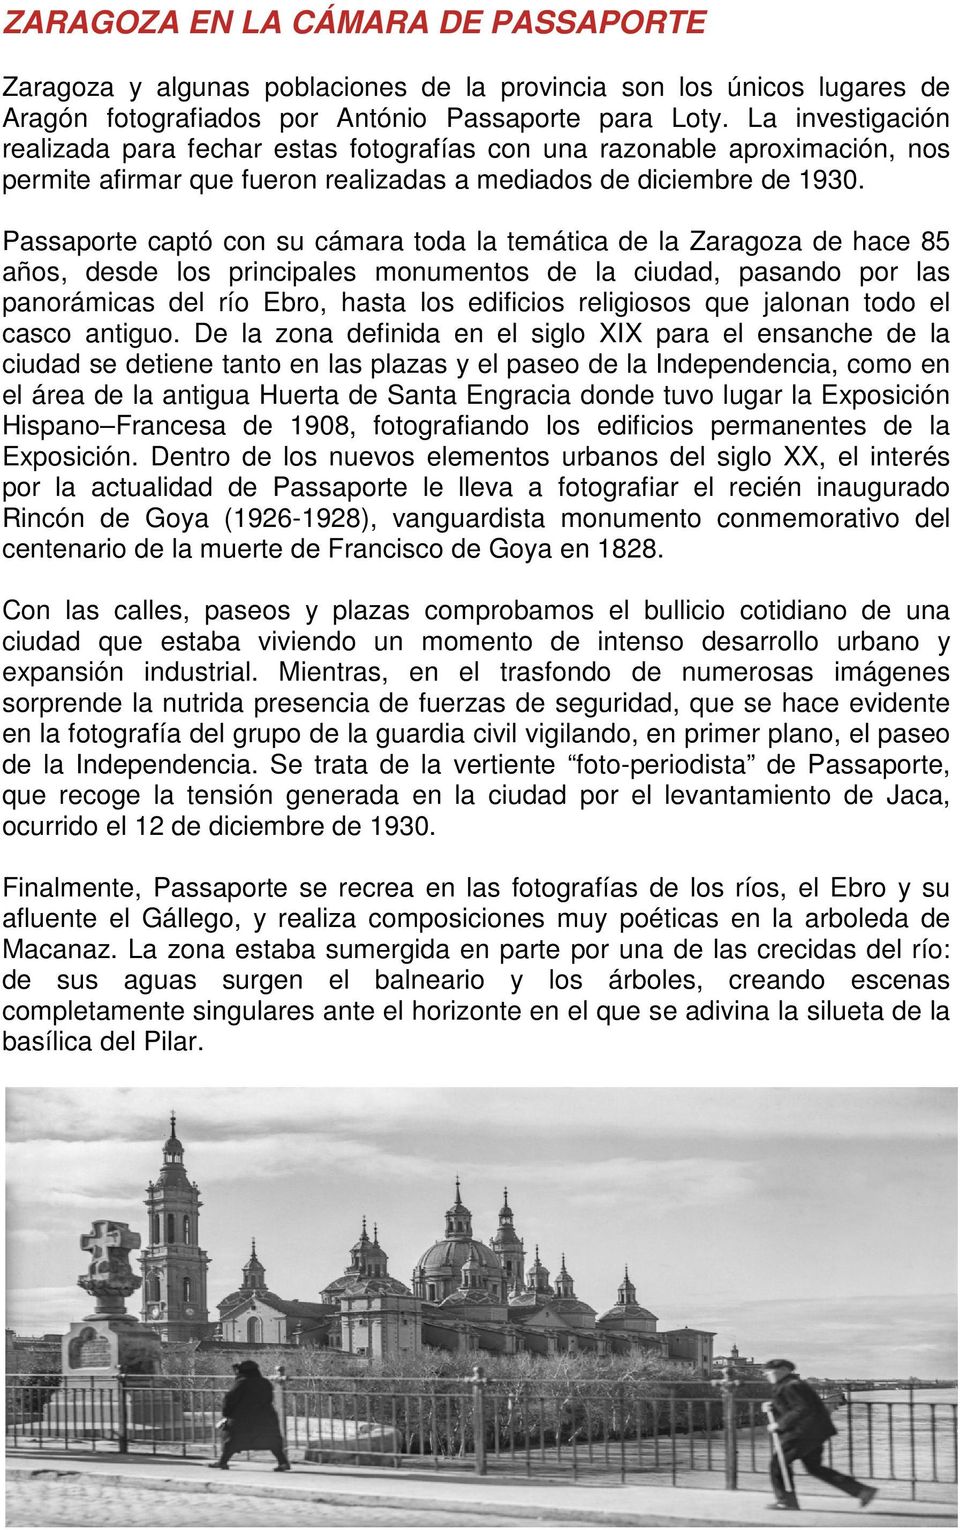 Passaporte captó con su cámara toda la temática de la Zaragoza de hace 85 años, desde los principales monumentos de la ciudad, pasando por las panorámicas del río Ebro, hasta los edificios religiosos